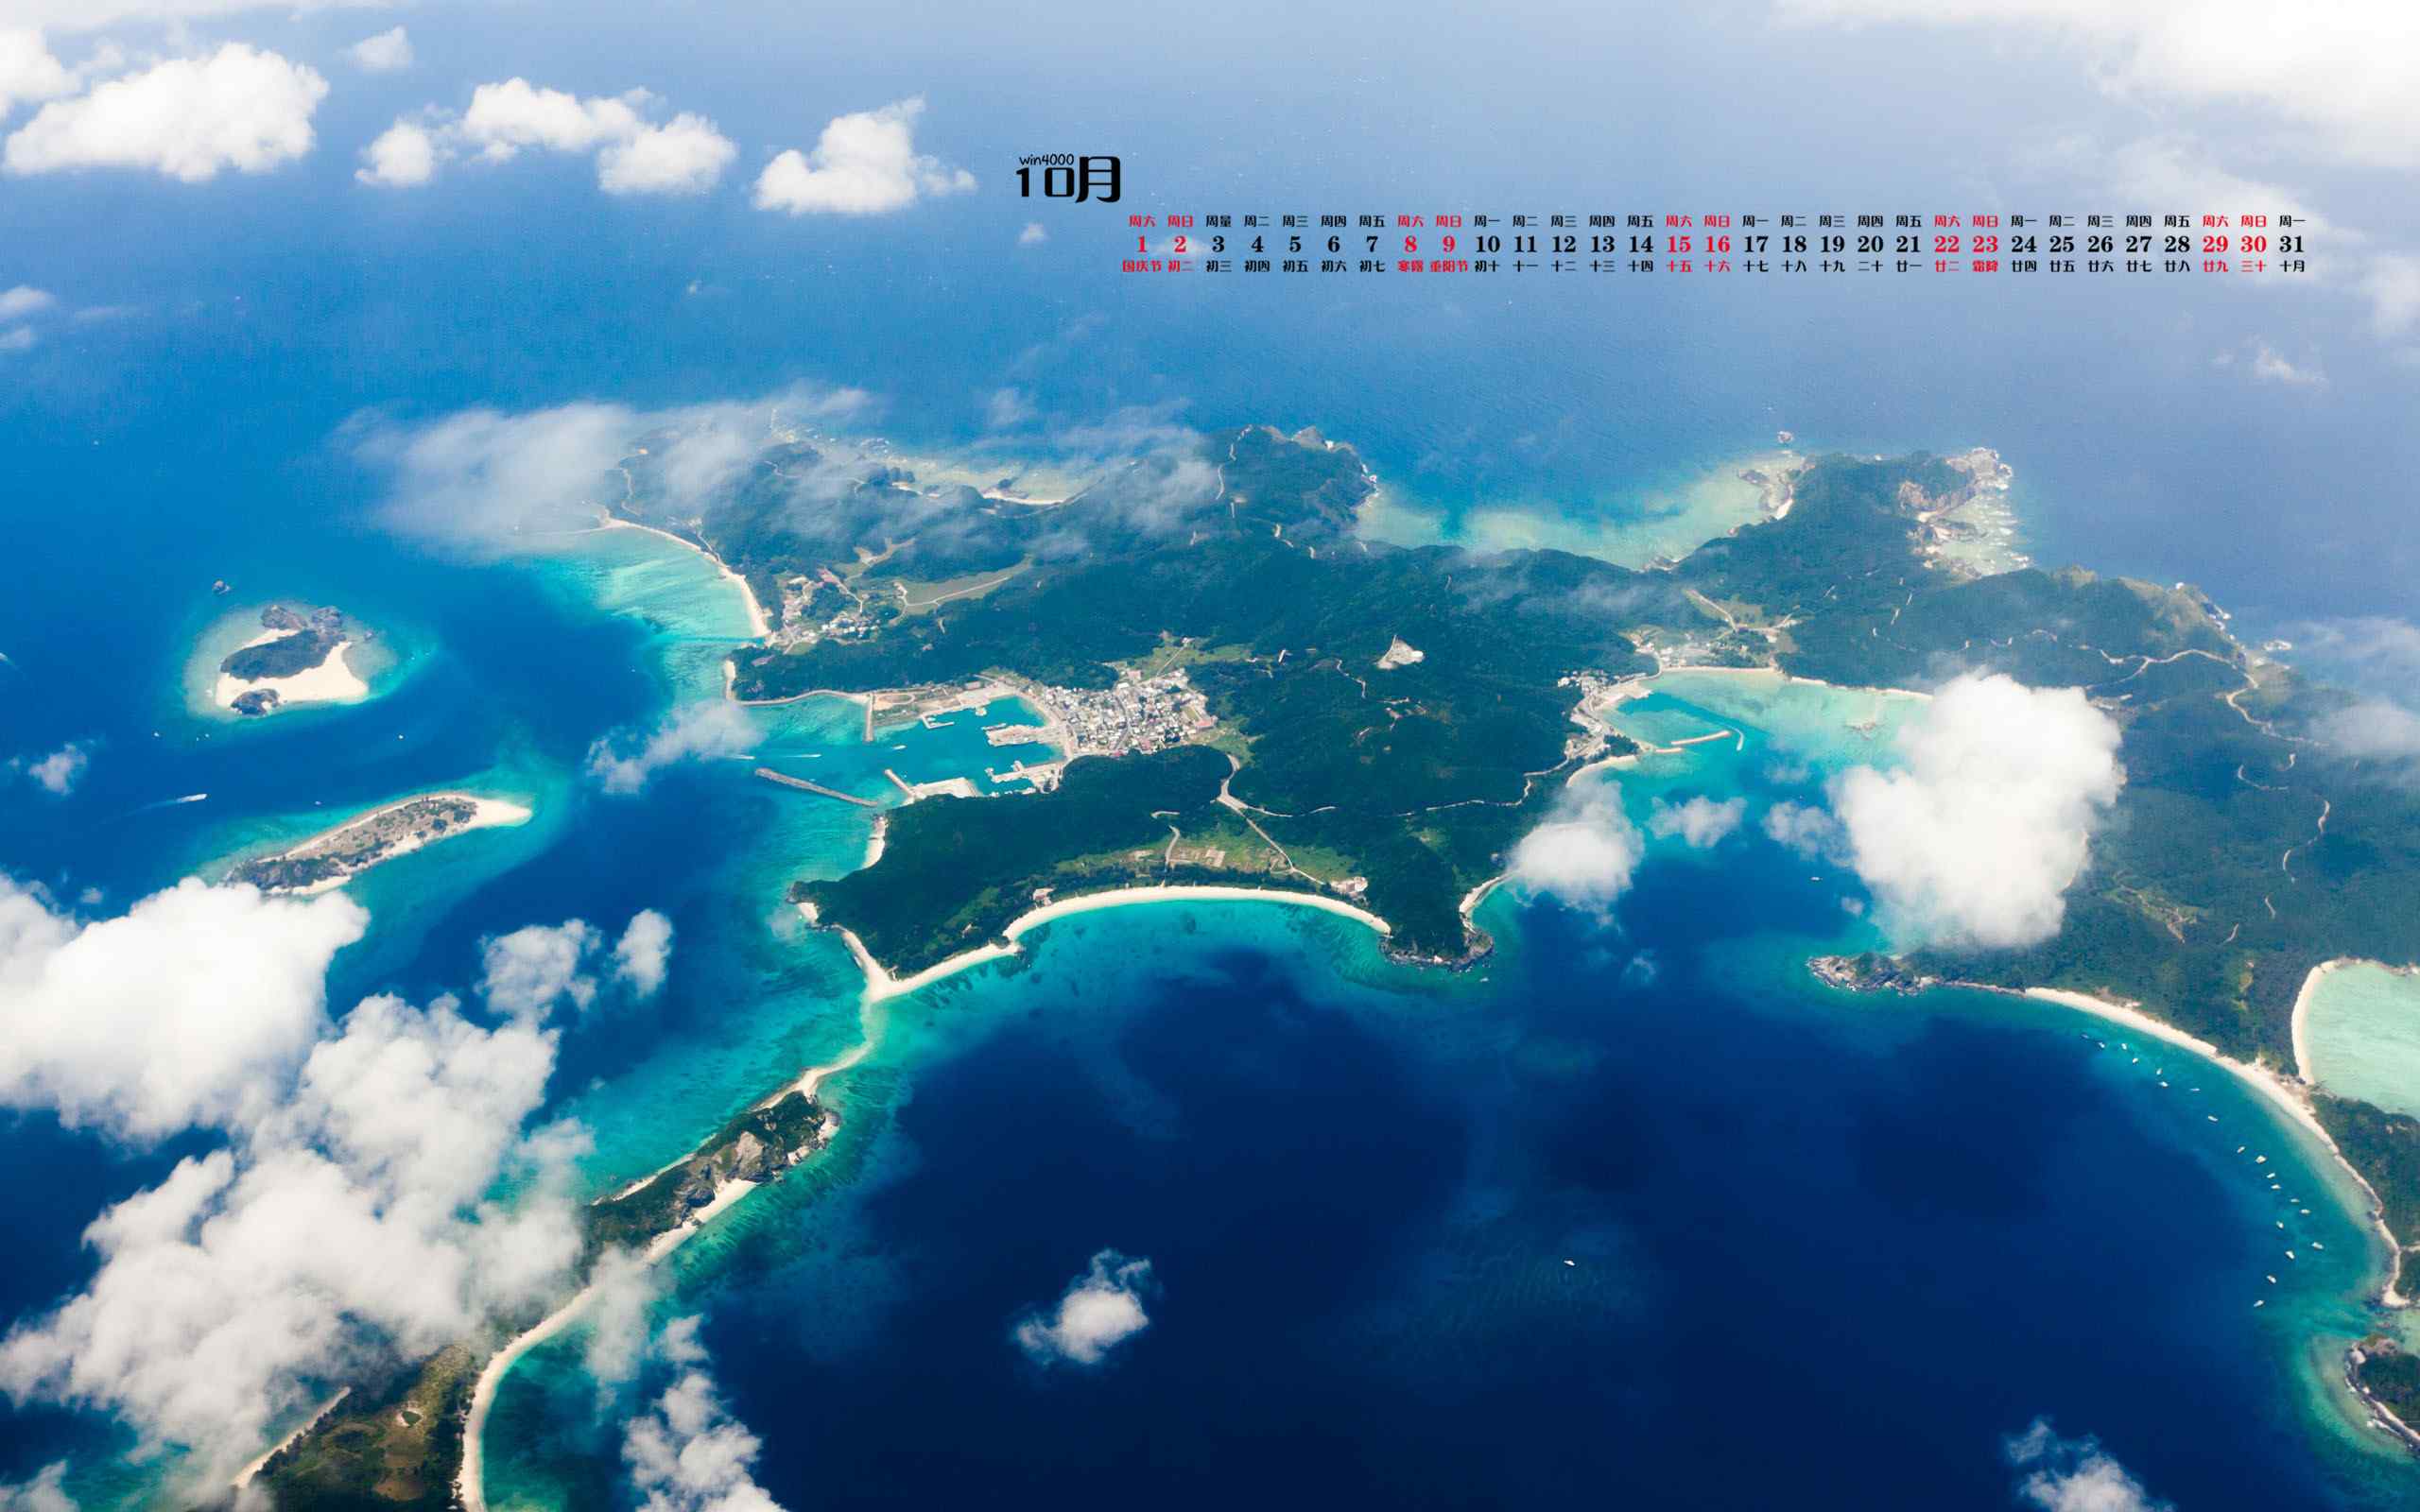 2016年10月日历海岛风景桌面壁纸